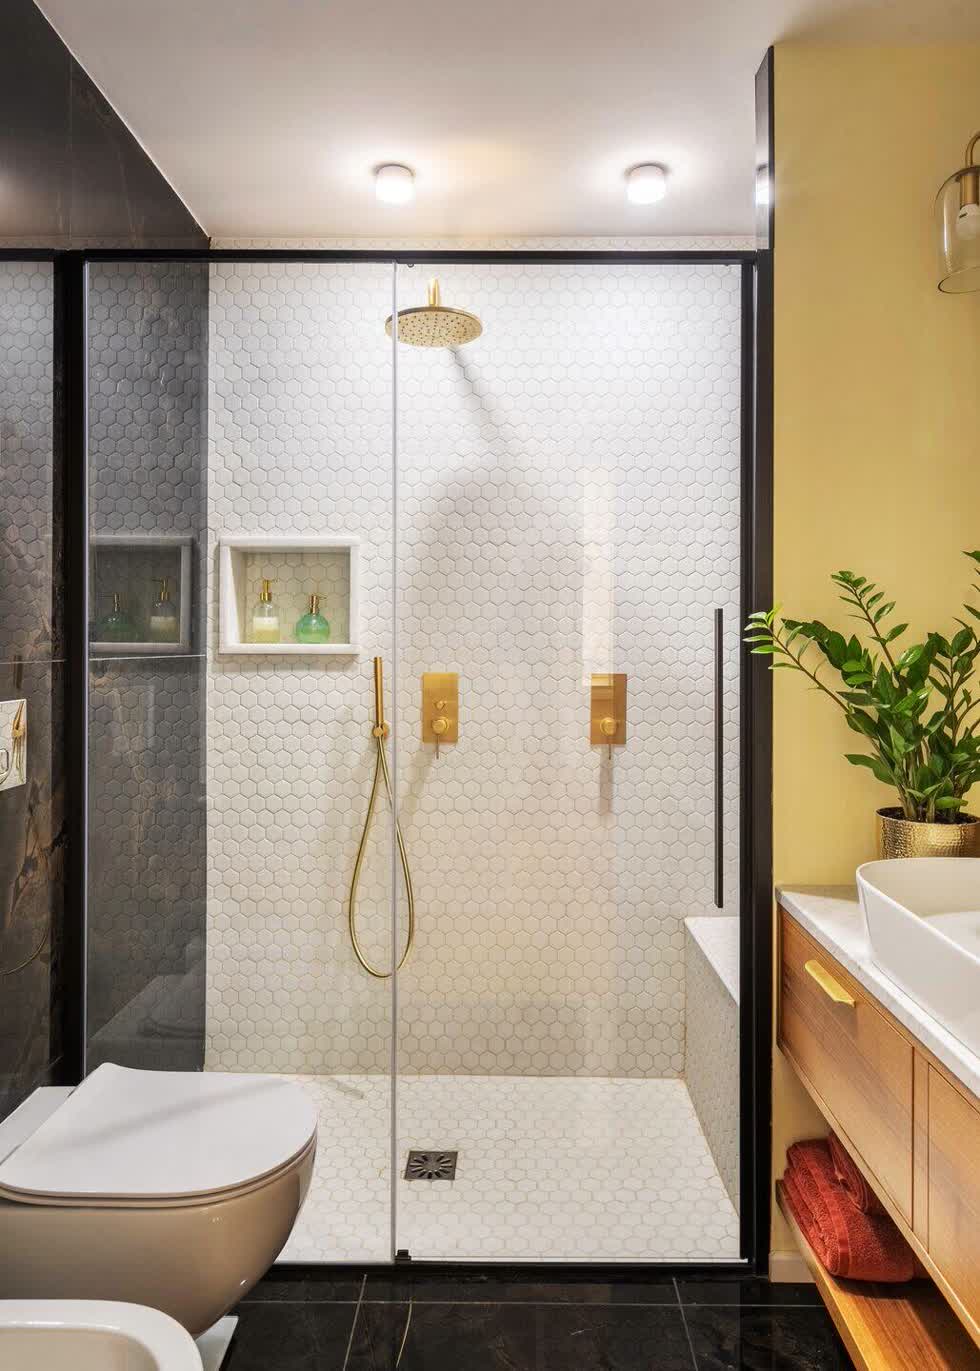 Kính cường lực khung nhôm đen được sử dụng làm vách ngăn giữa hai không gian tắm và vệ sinh.